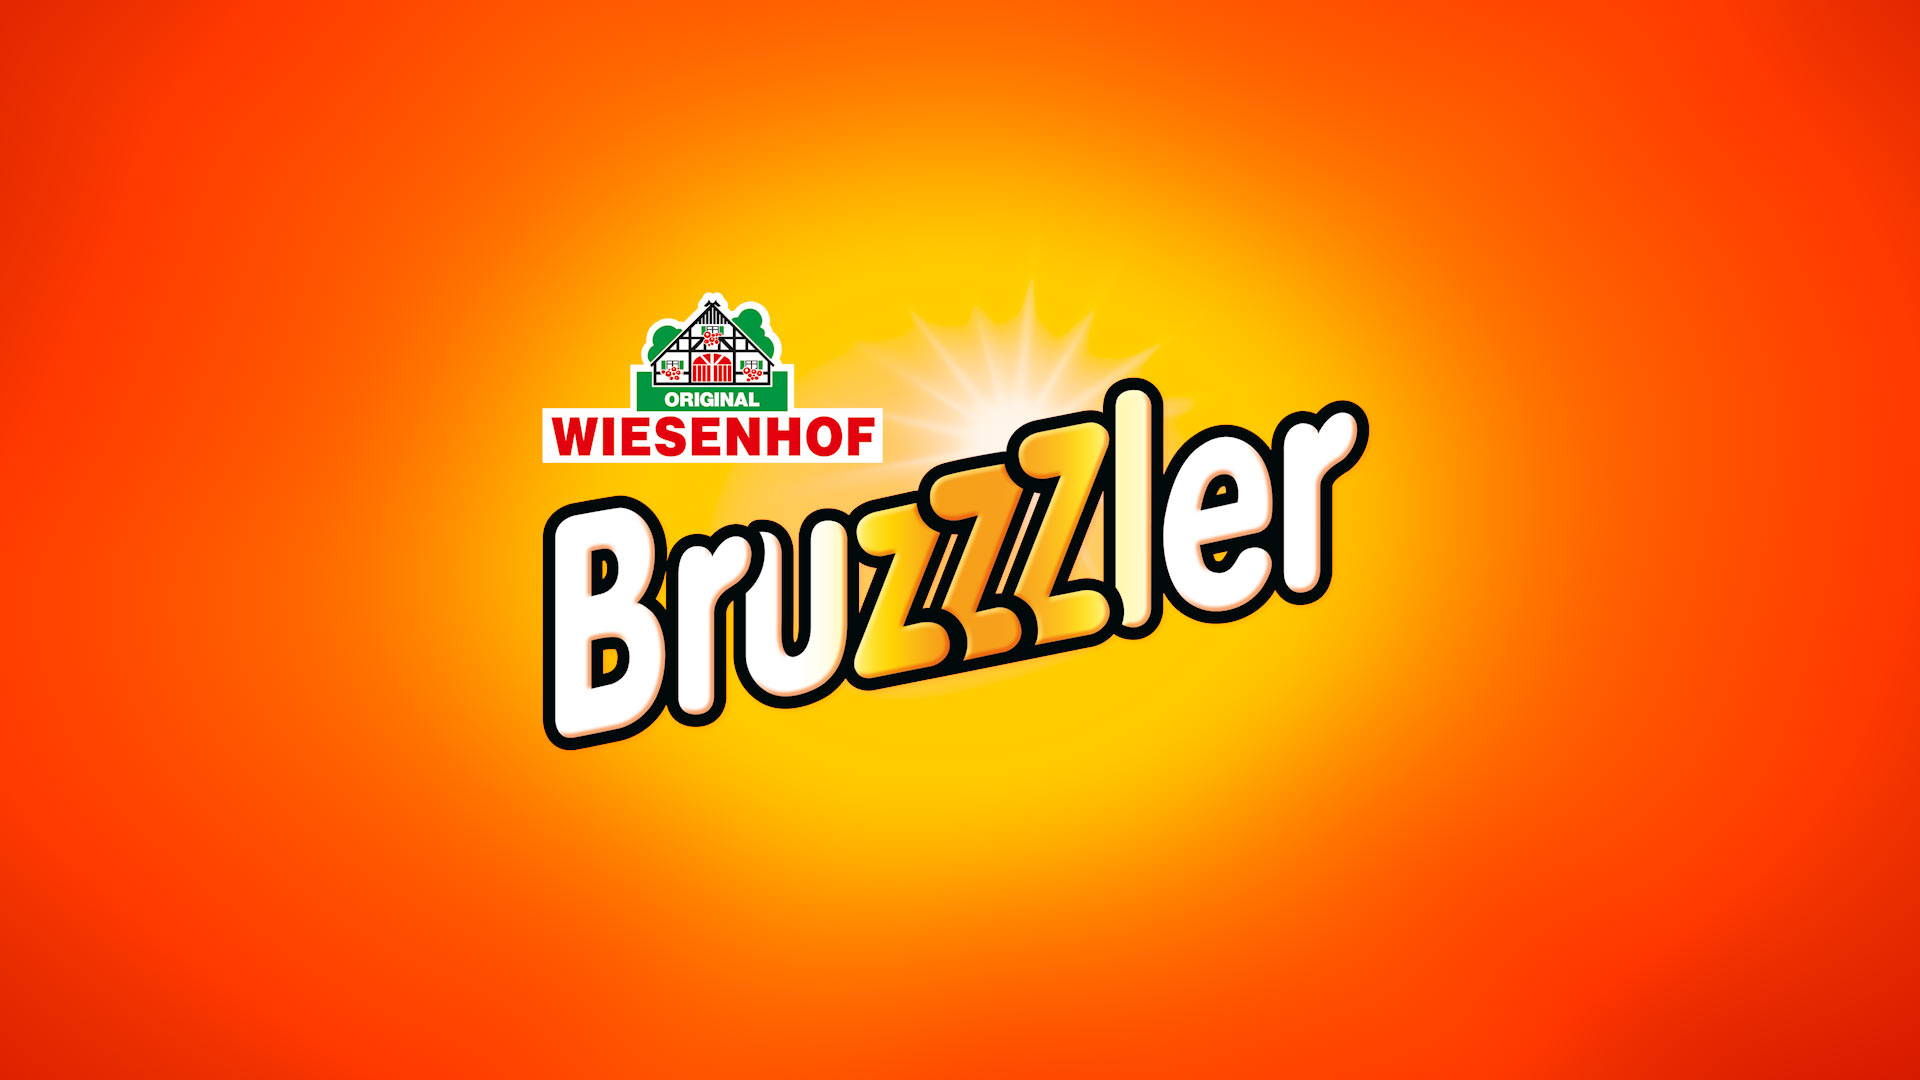 Logo Bruzzzler mit Hintergrund